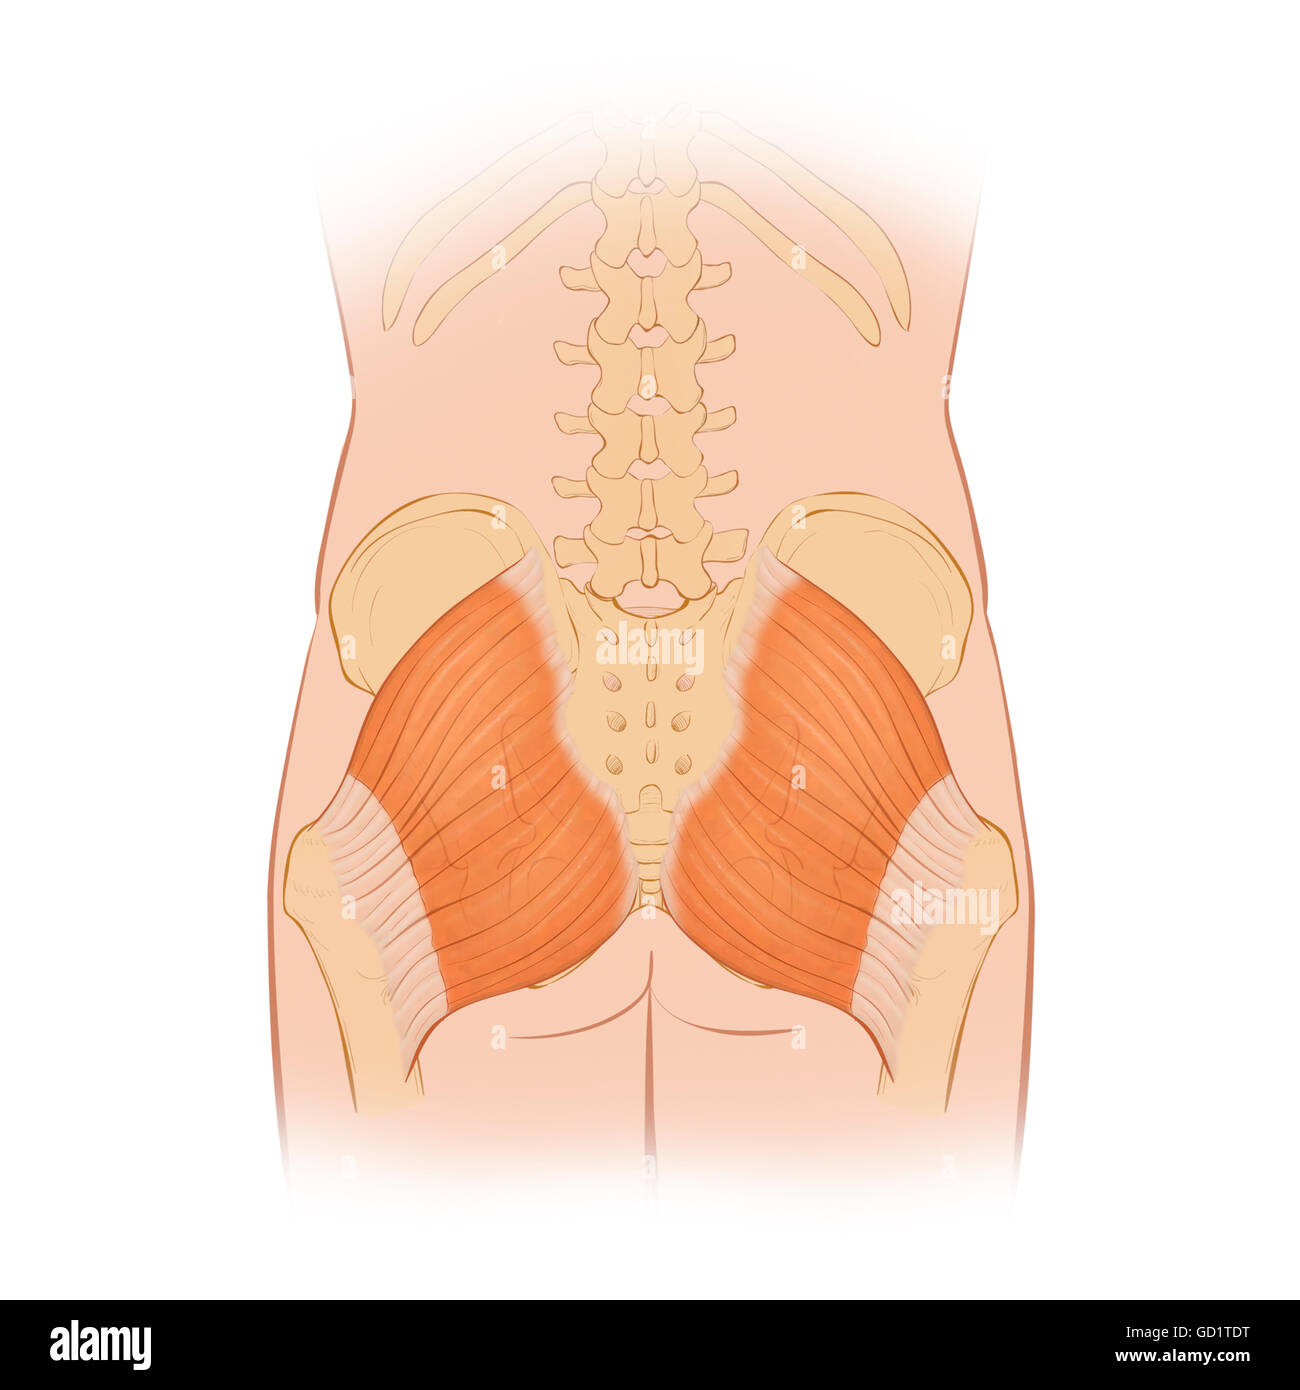 Posterior Normalansicht der Hüftknochen und Gluteus Maximus Muskel einschließlich der Lendenwirbel Stockfoto